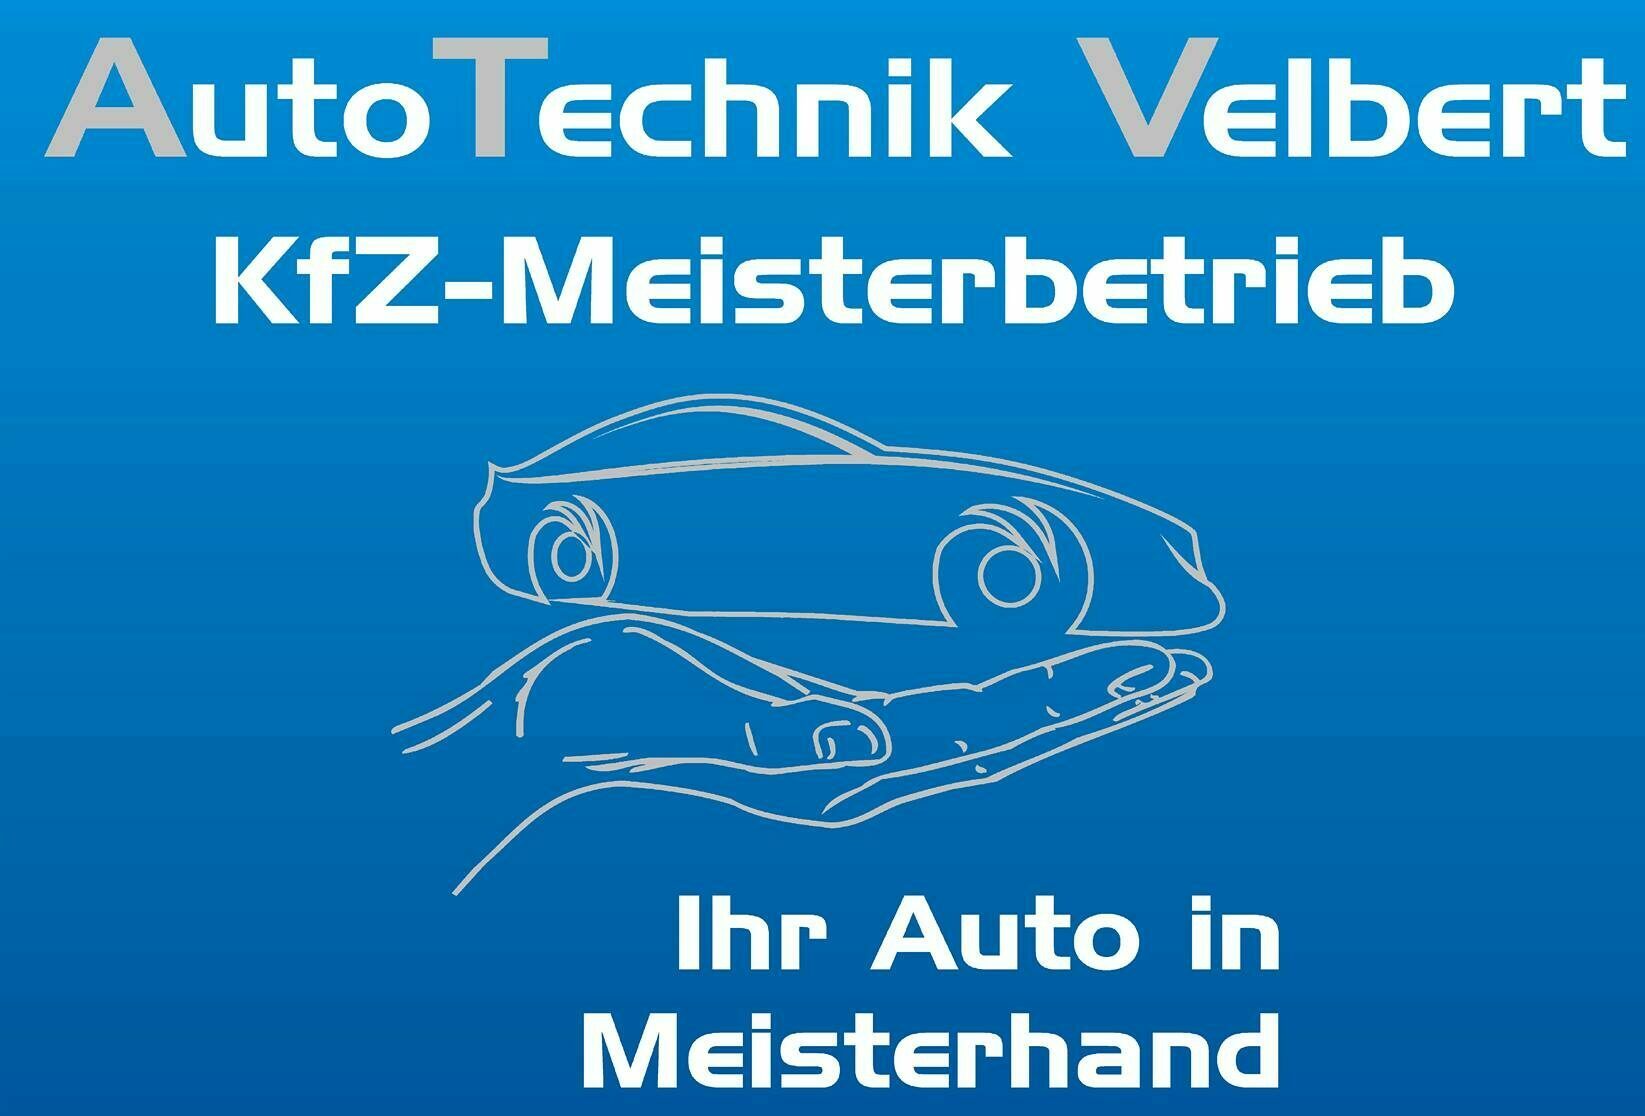 Auto Technik Velbert